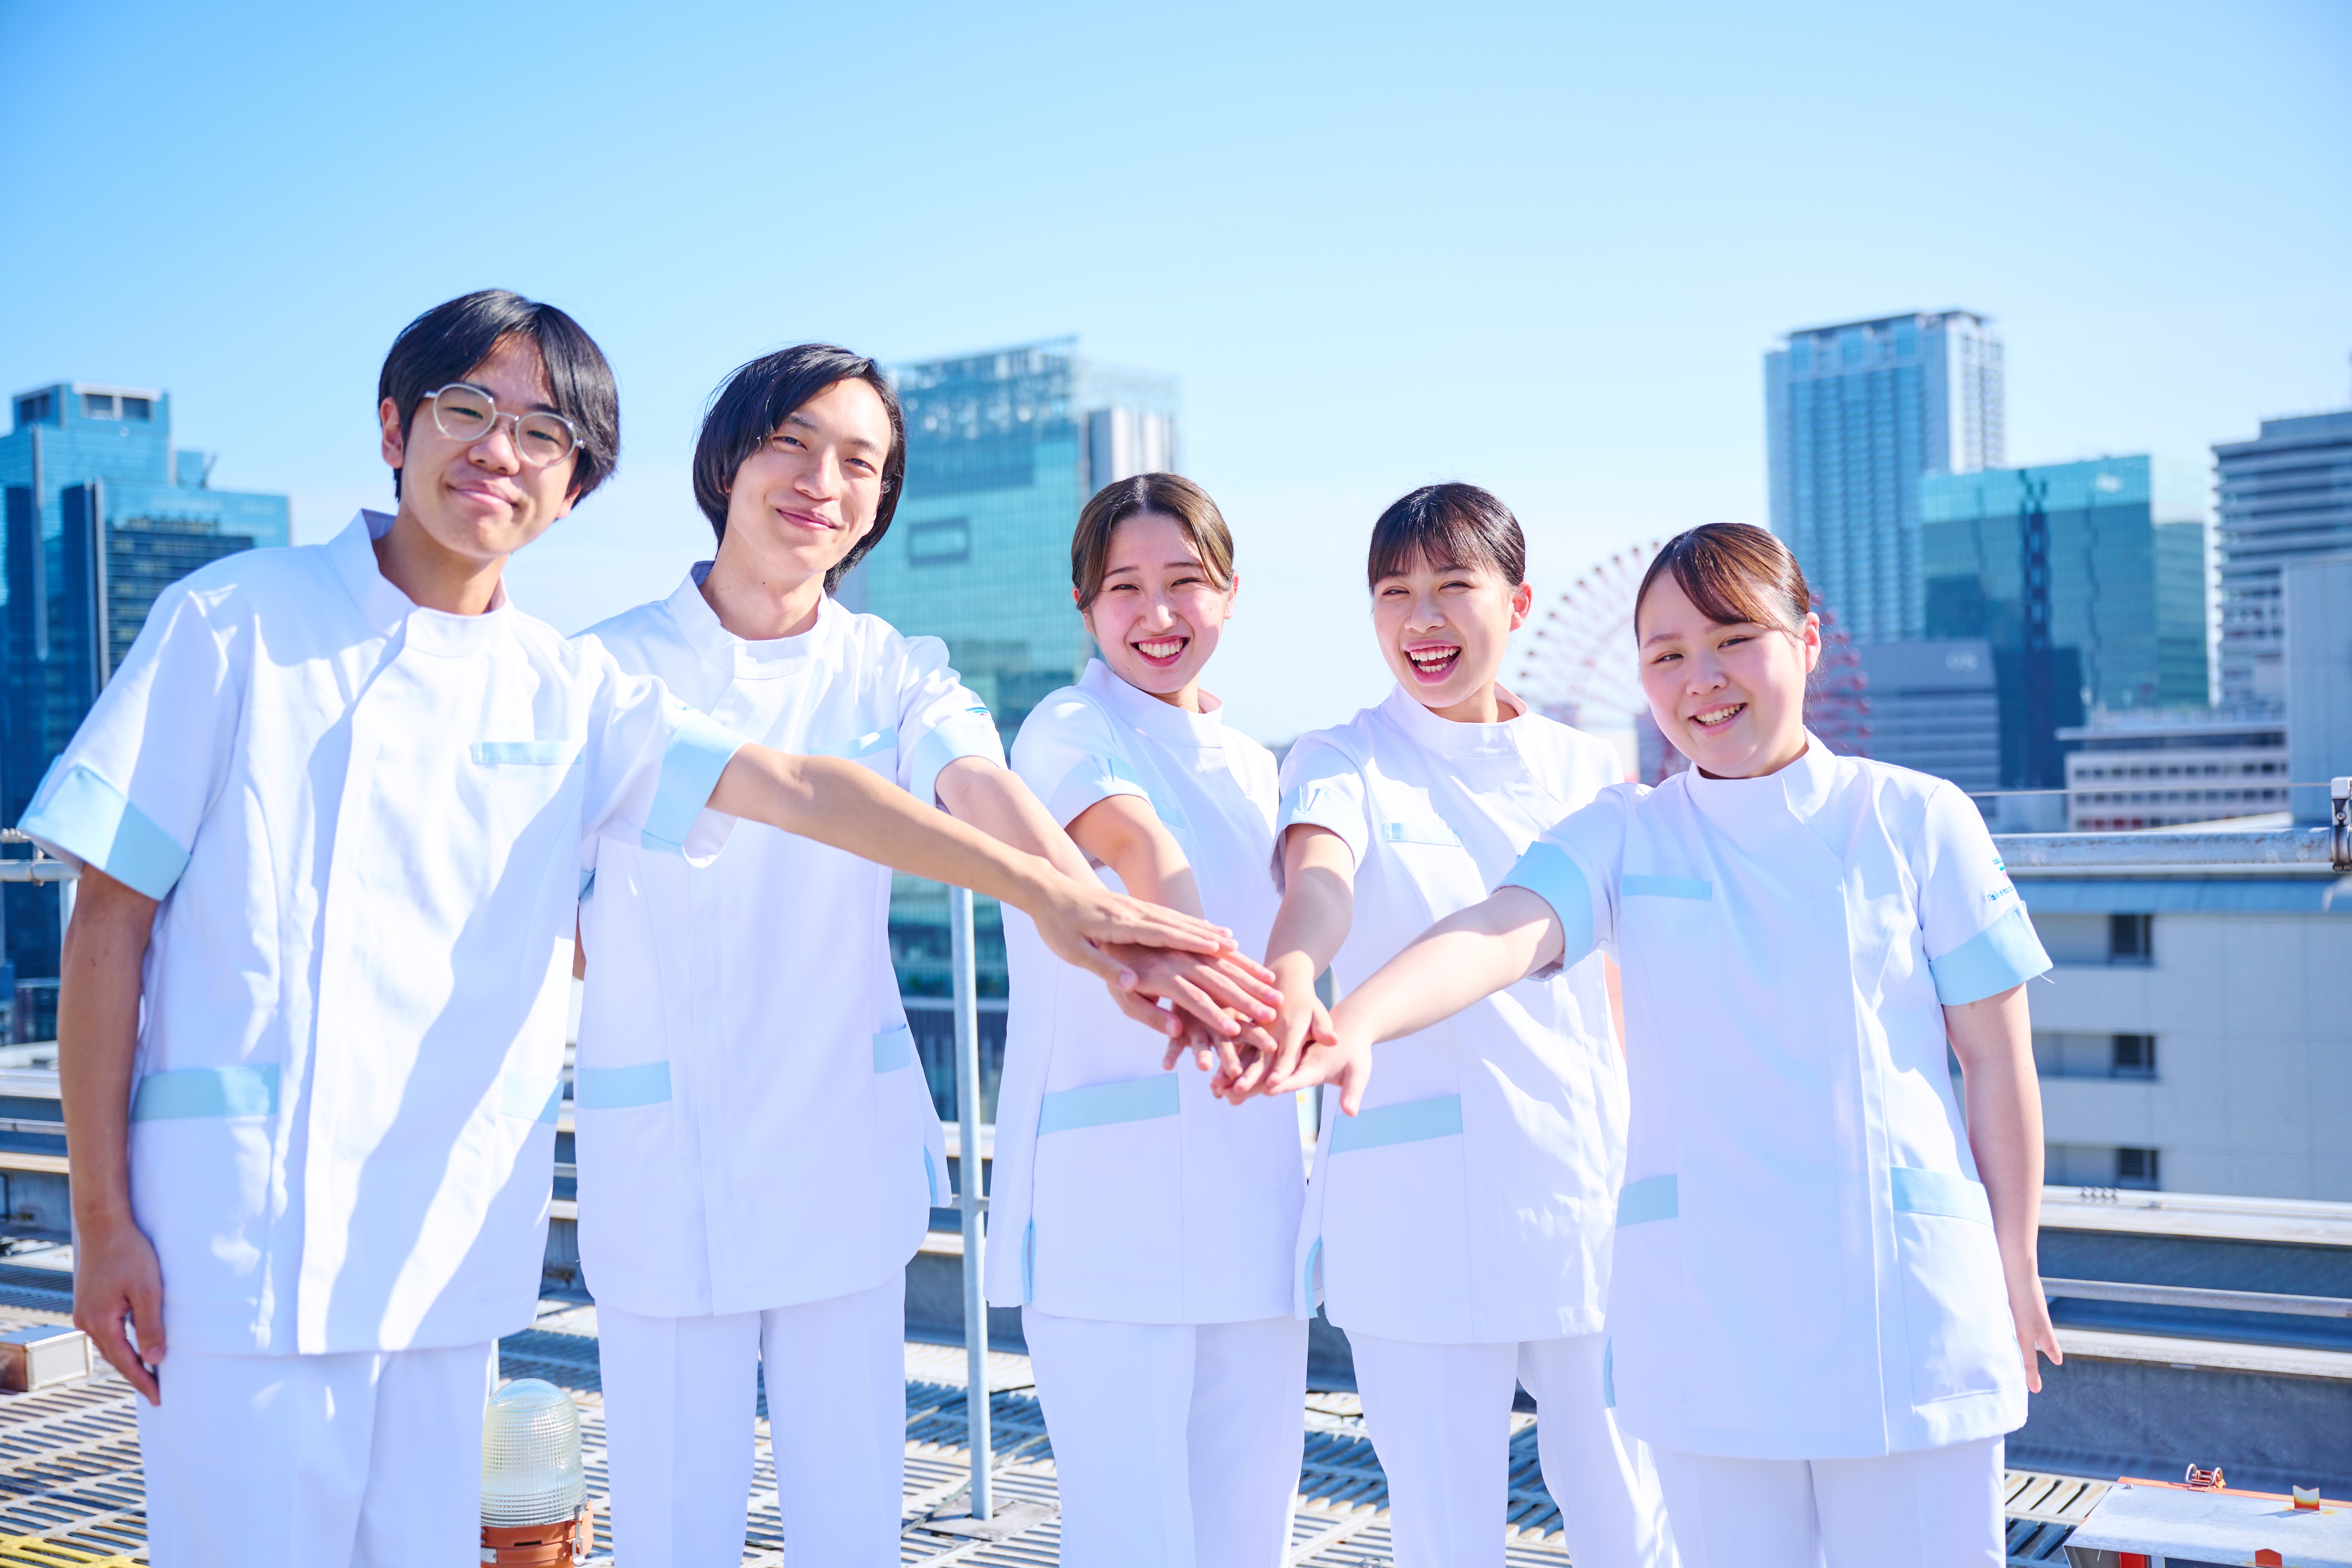 宝塚大学 看護学部の看護学部 ミニオープンキャンパス